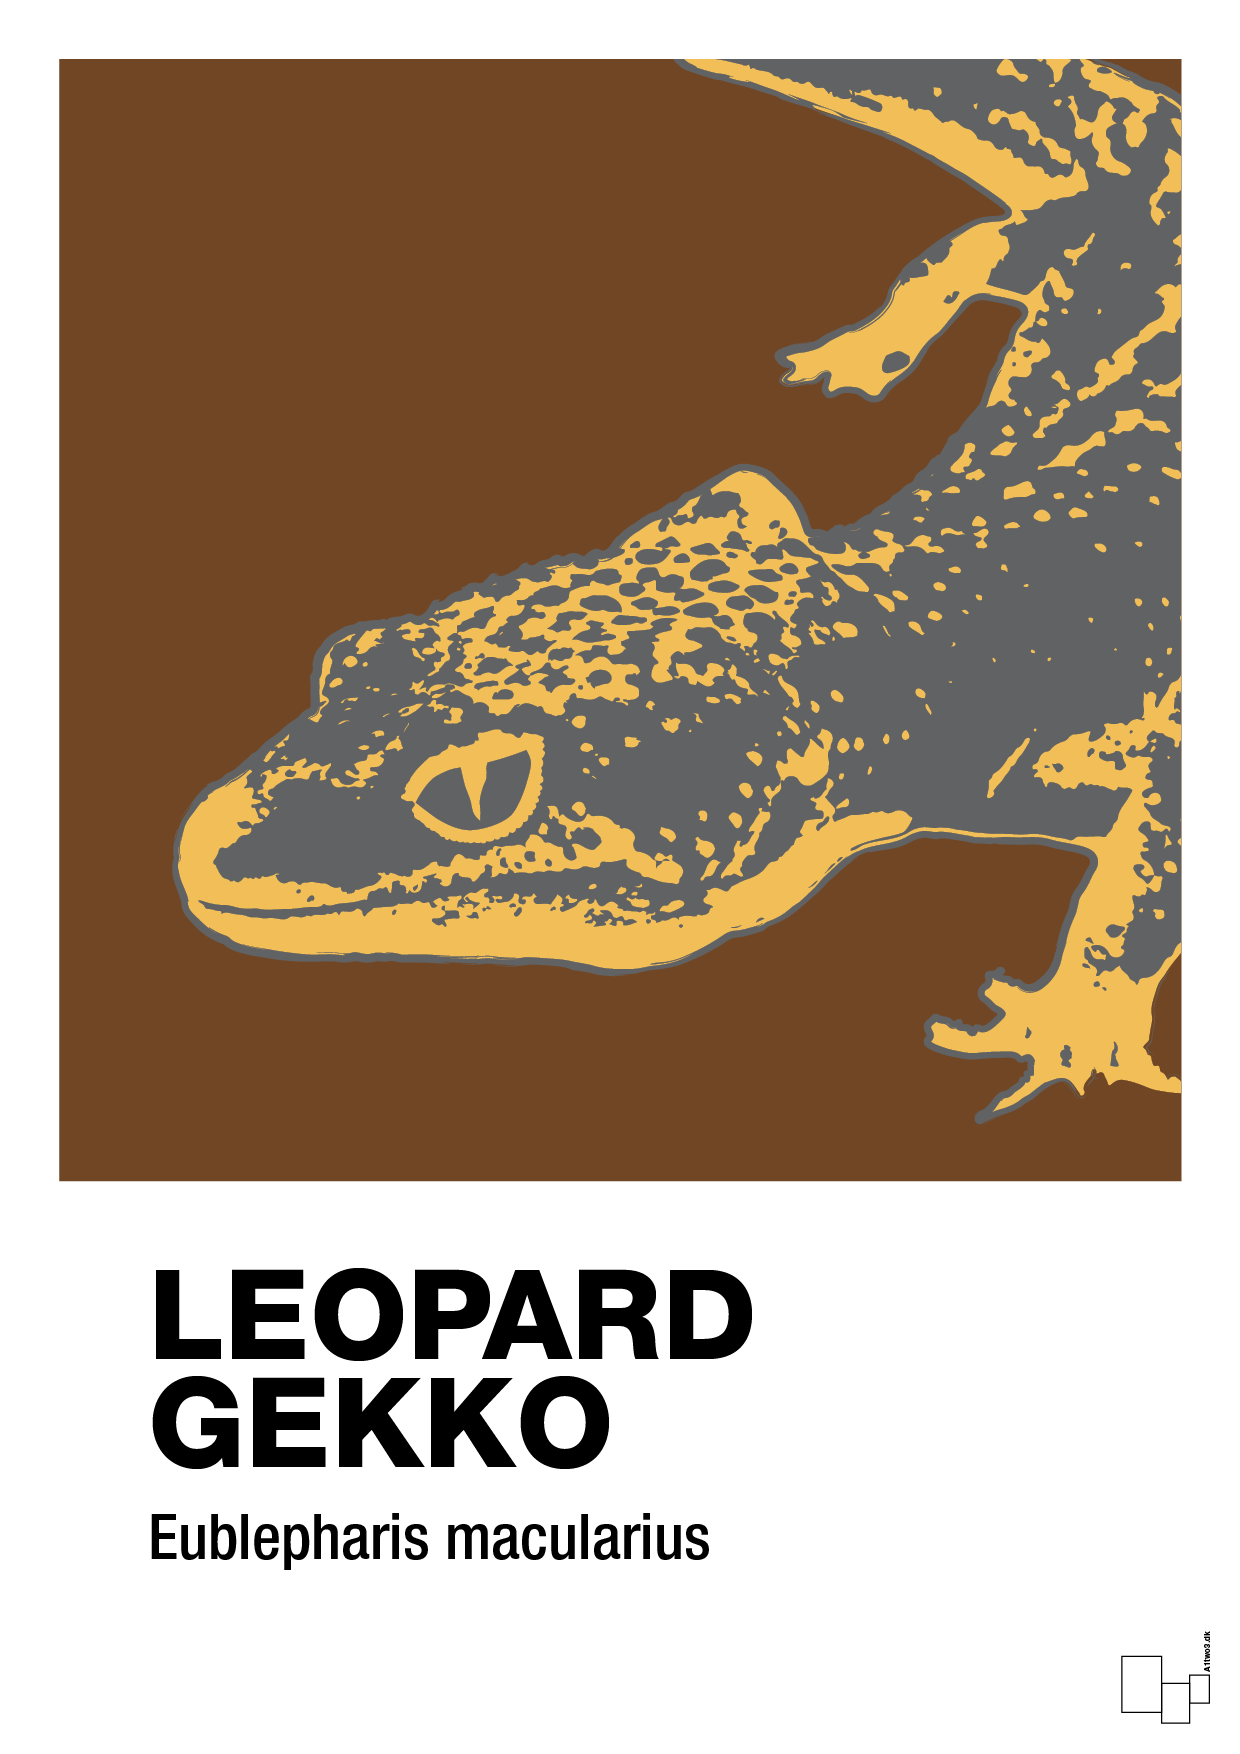 leopard gekko - Plakat med Videnskab i Dark Brown